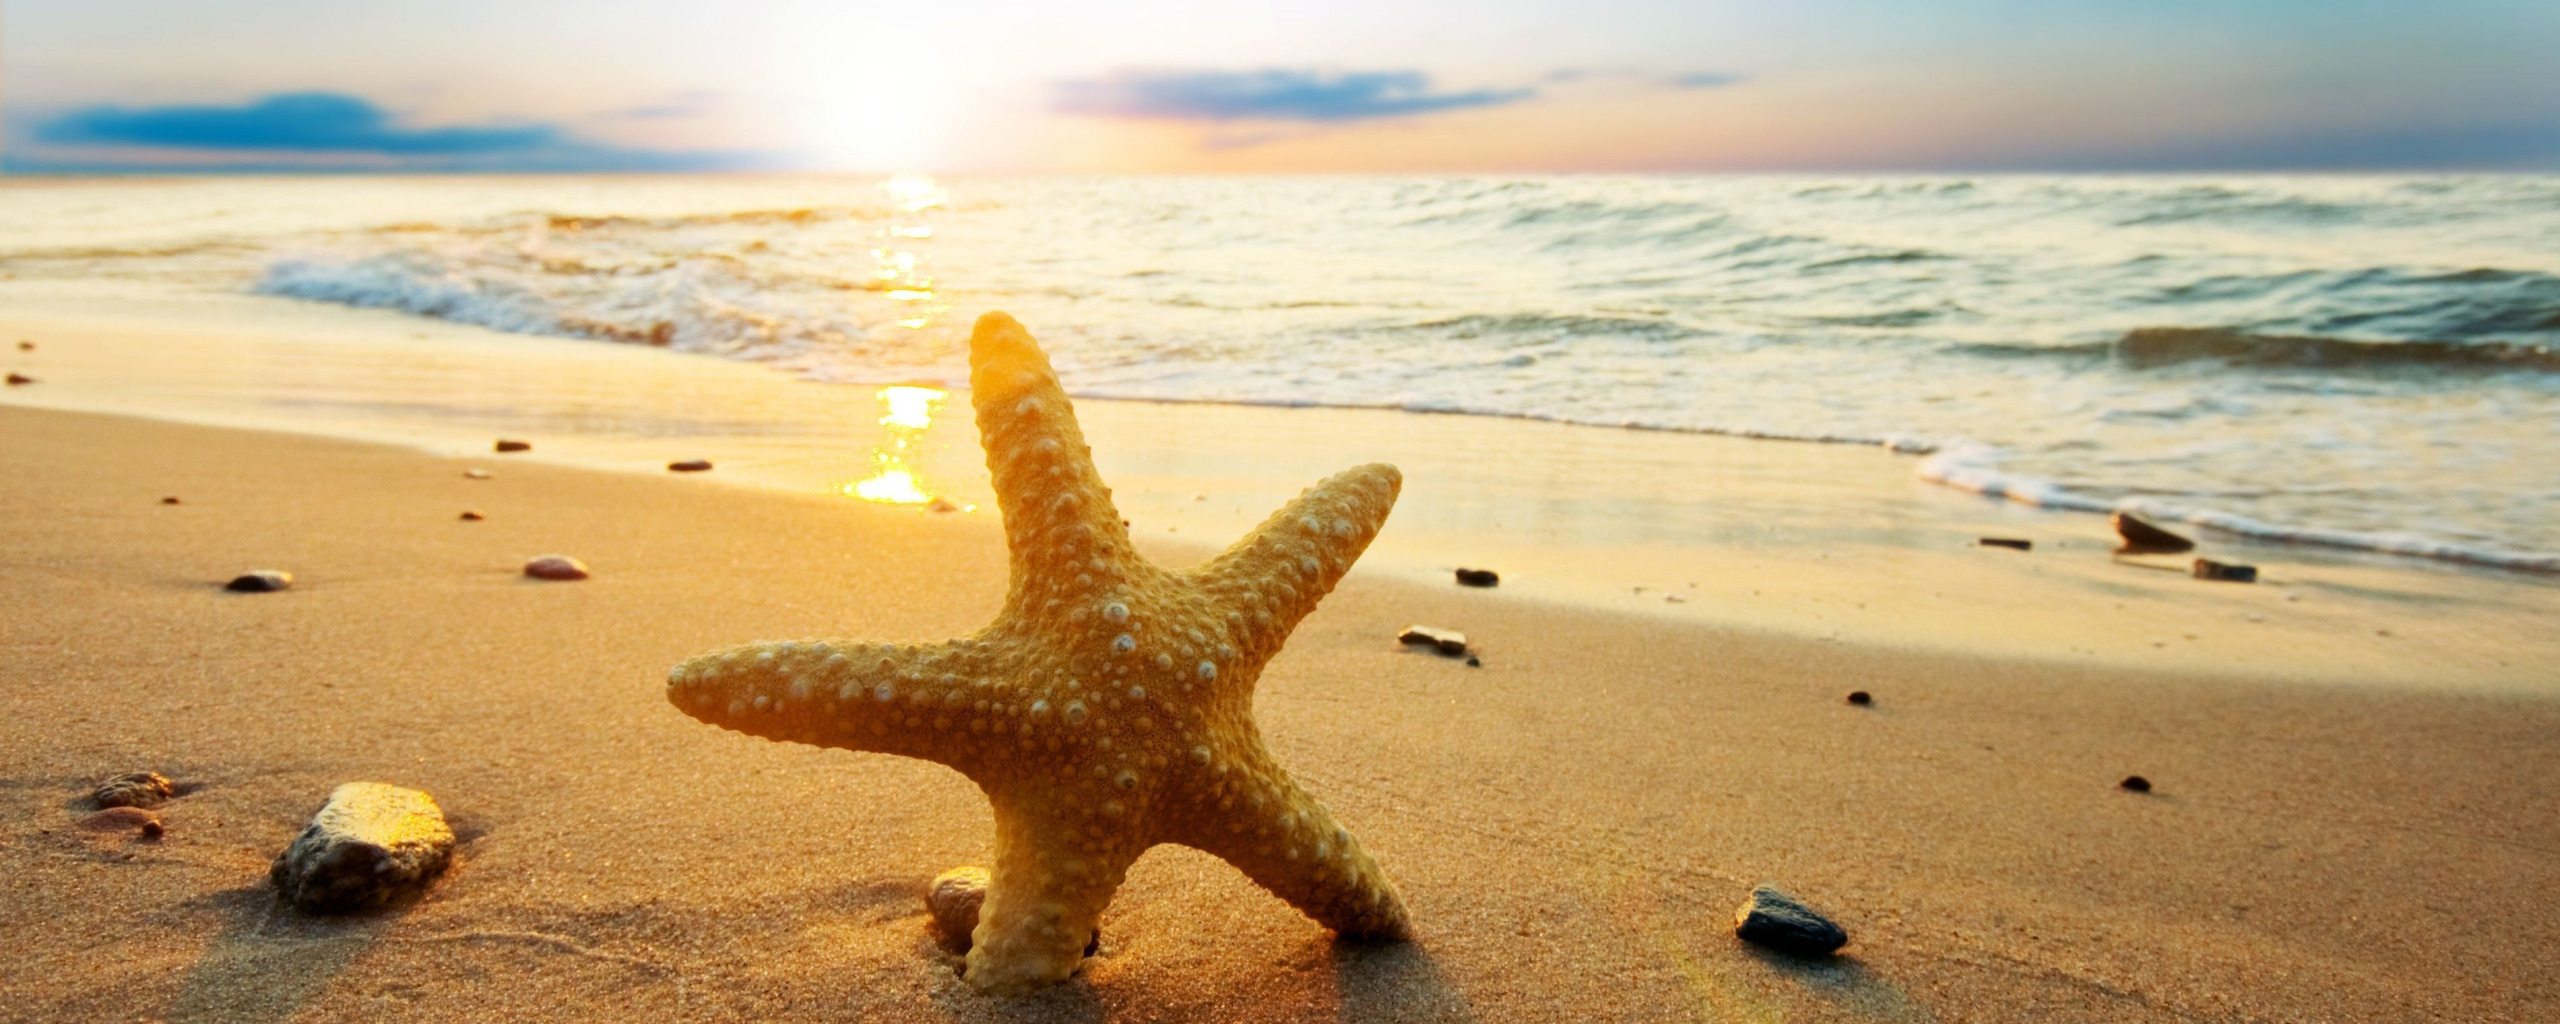 Здесь вас ждут морские пляжи. Муз пляж море. Море Солнечный день пляж песок. Море солнце песок. Красивые картинки.